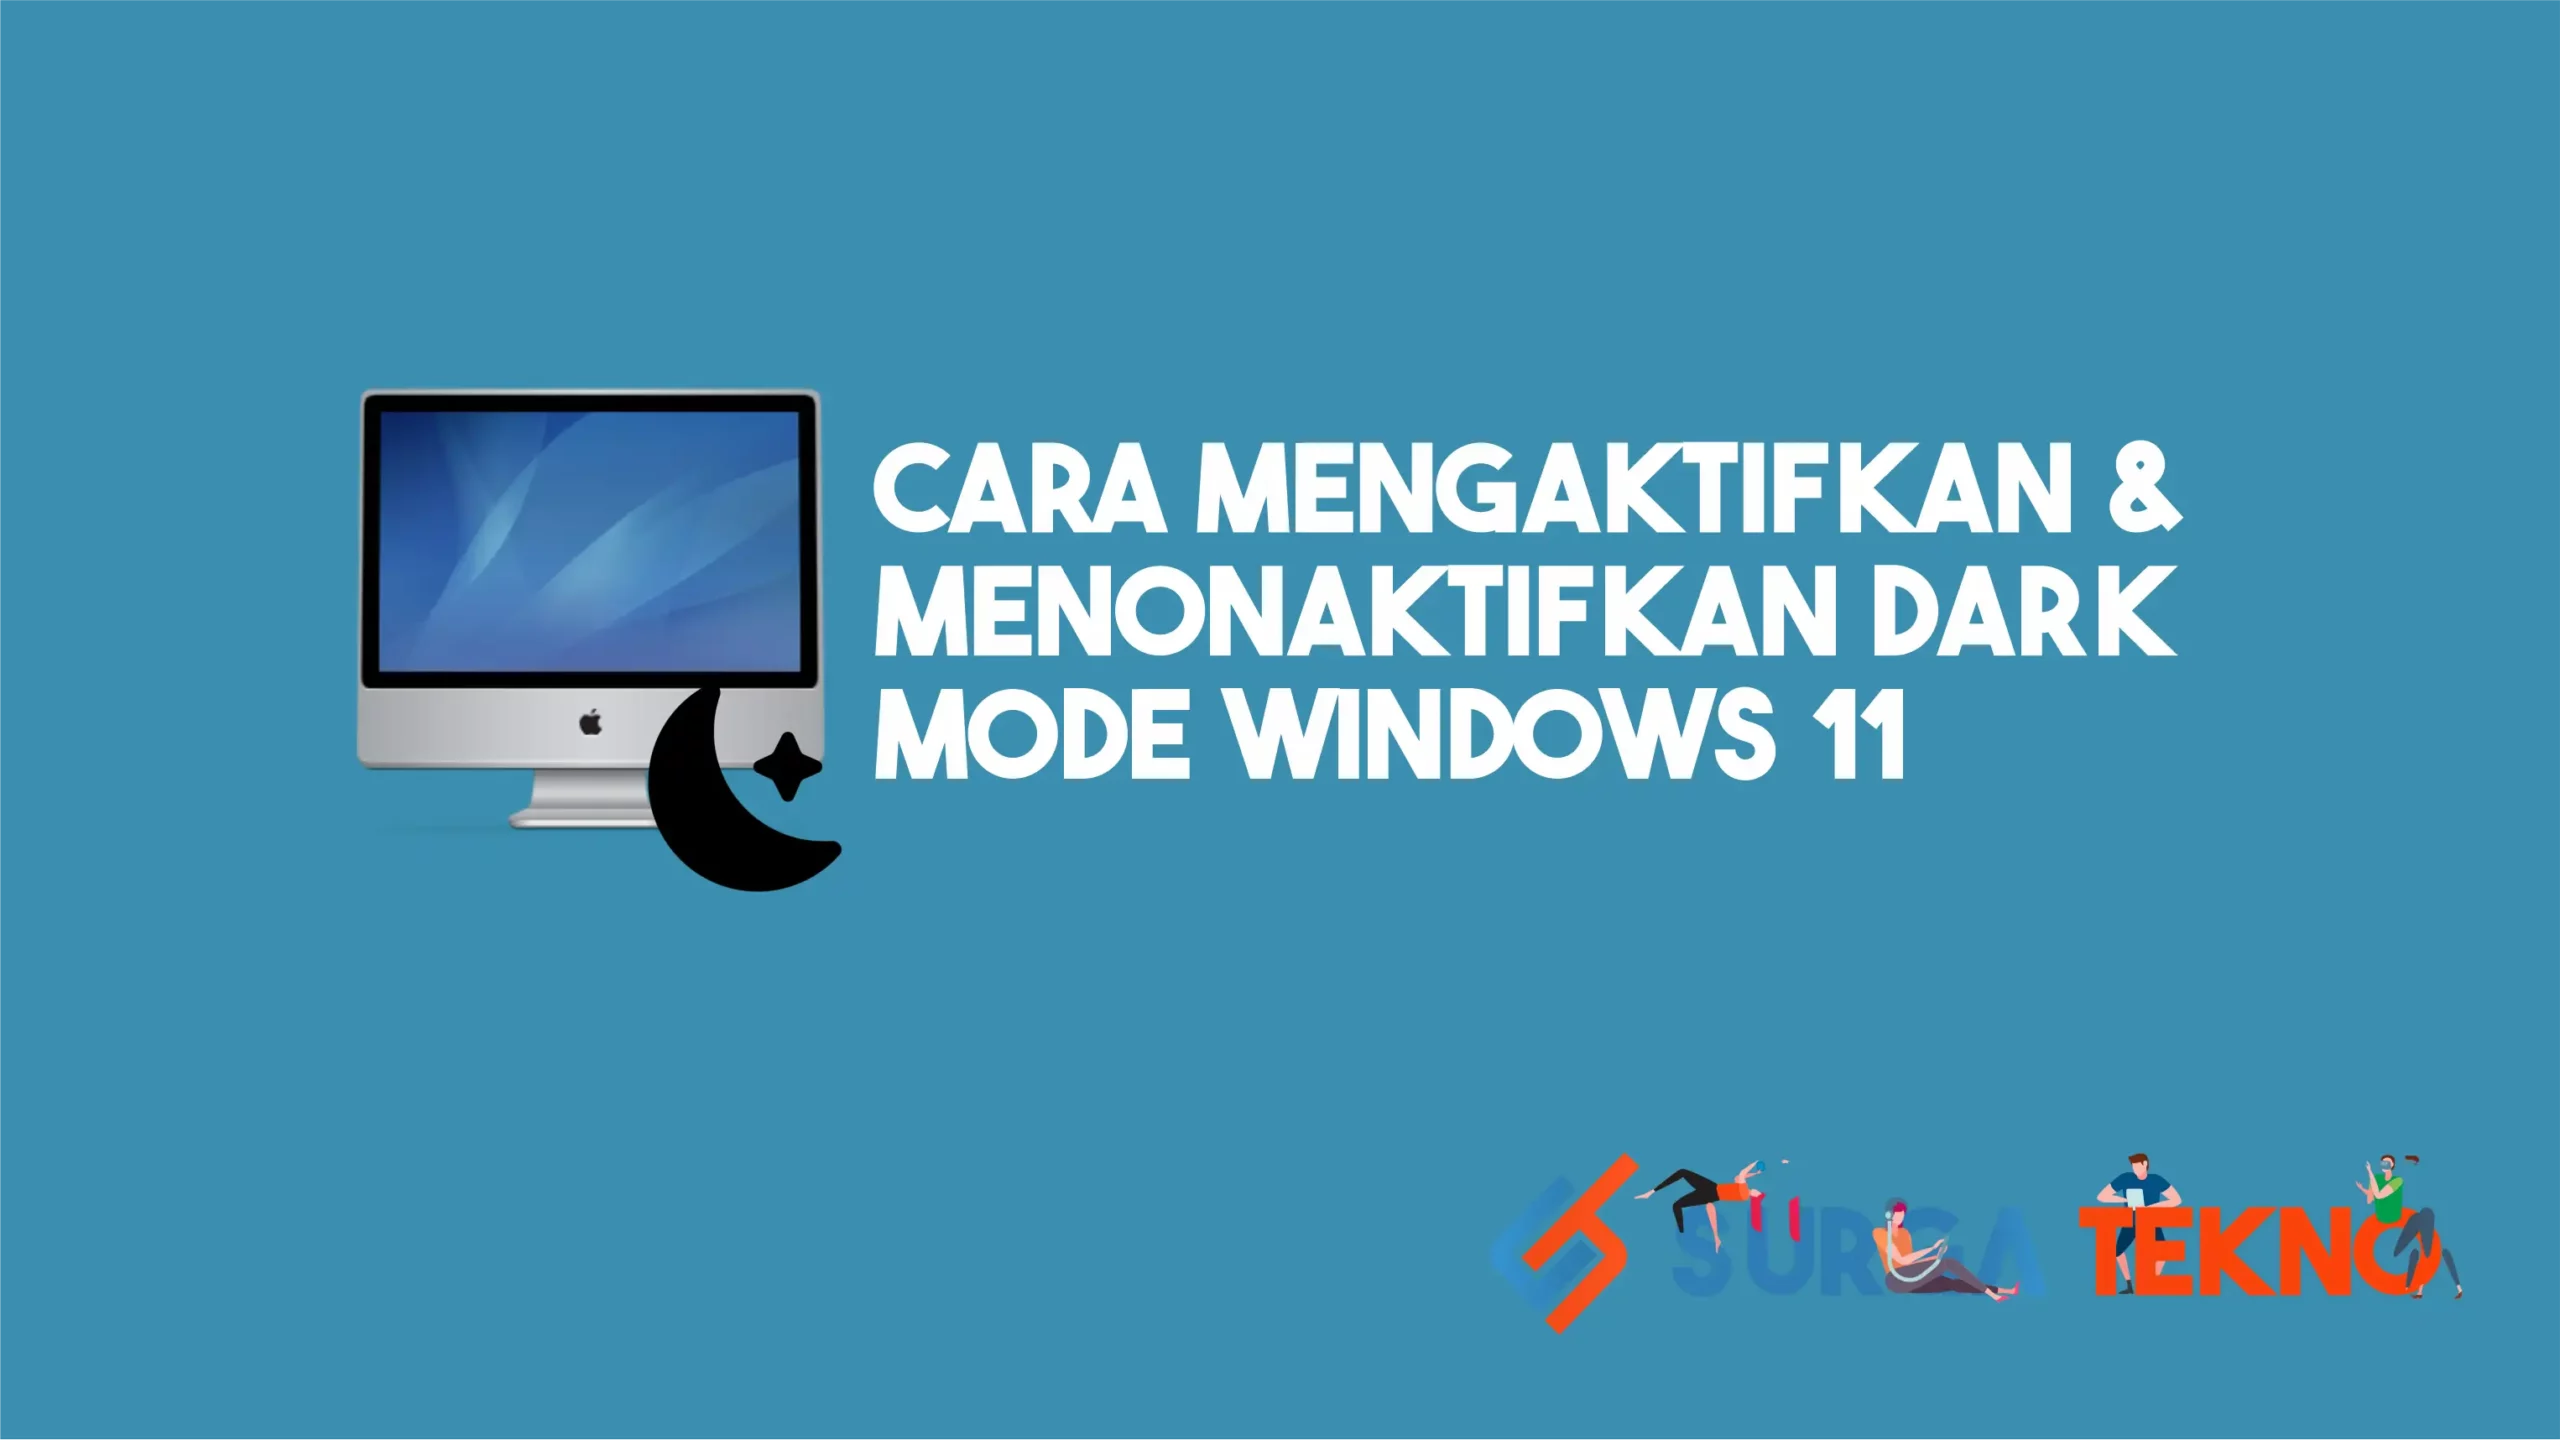 Cara Mengaktifkan & Menonaktifkan Dark Mode Windows 11